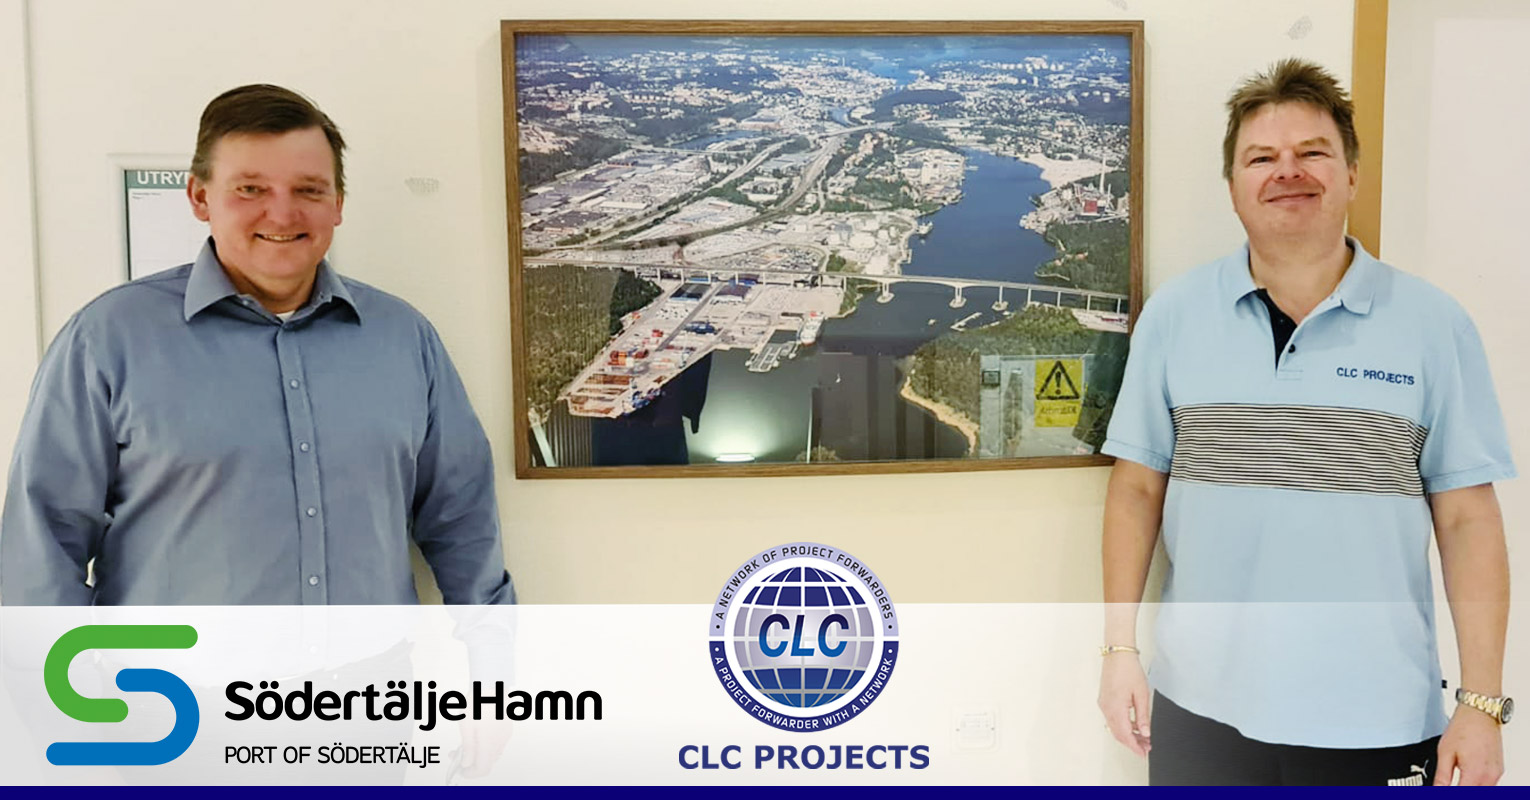 Södertälje Hamn and CLC Projects met in Sweden